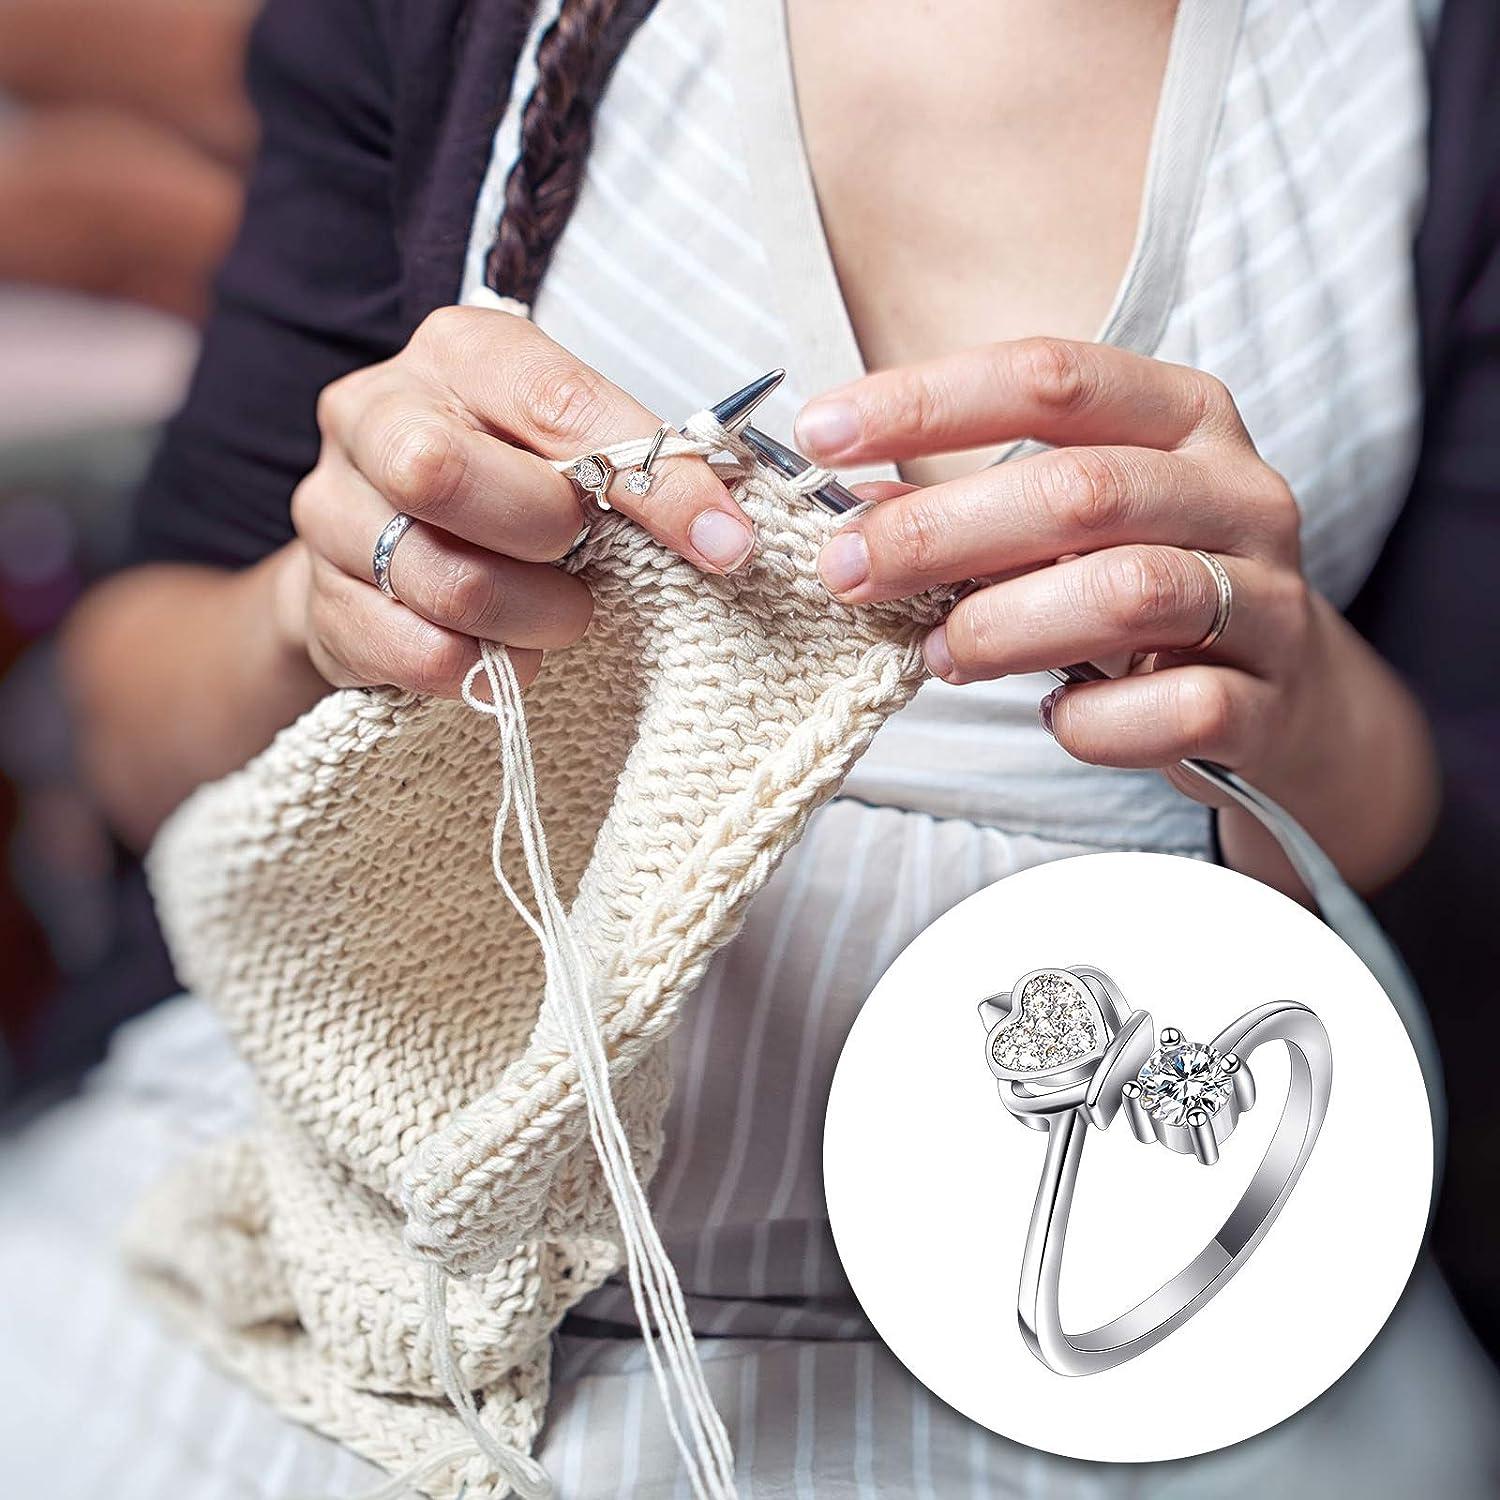 Adjustable Crochet For Finger Braided Knitting Yarn Tension Rings